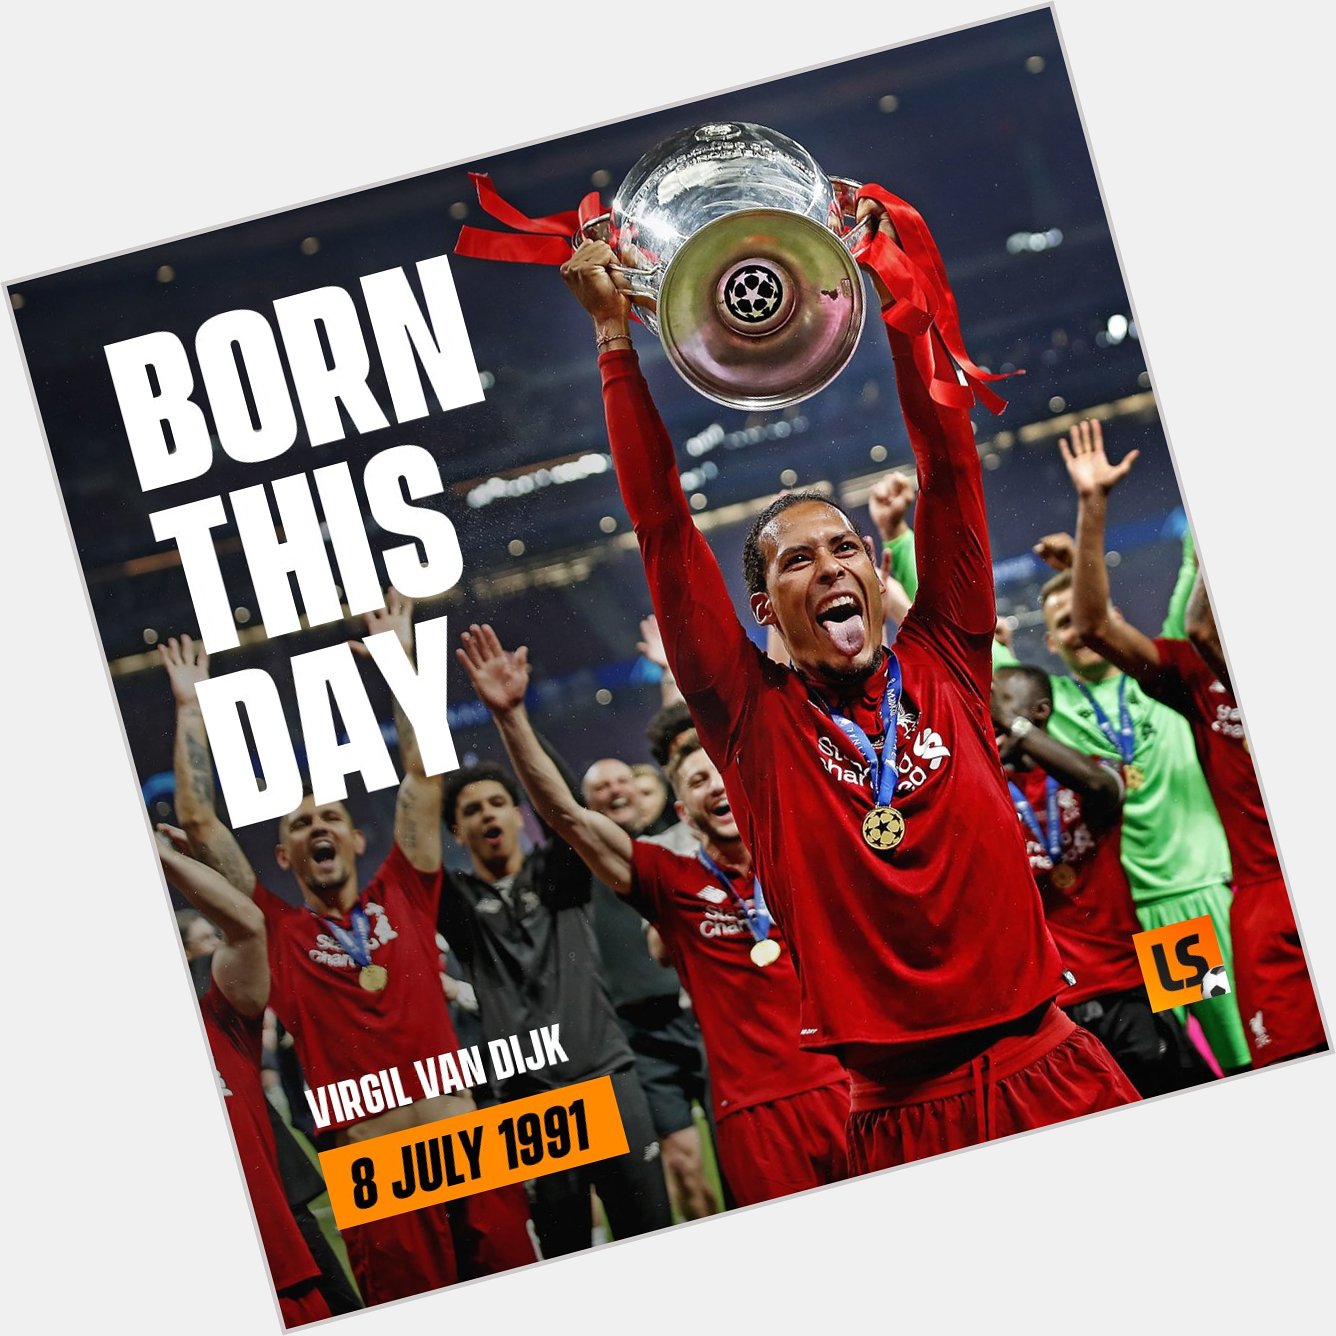 Happy Birthday to Liverpool superstar Virgil van Dijk 